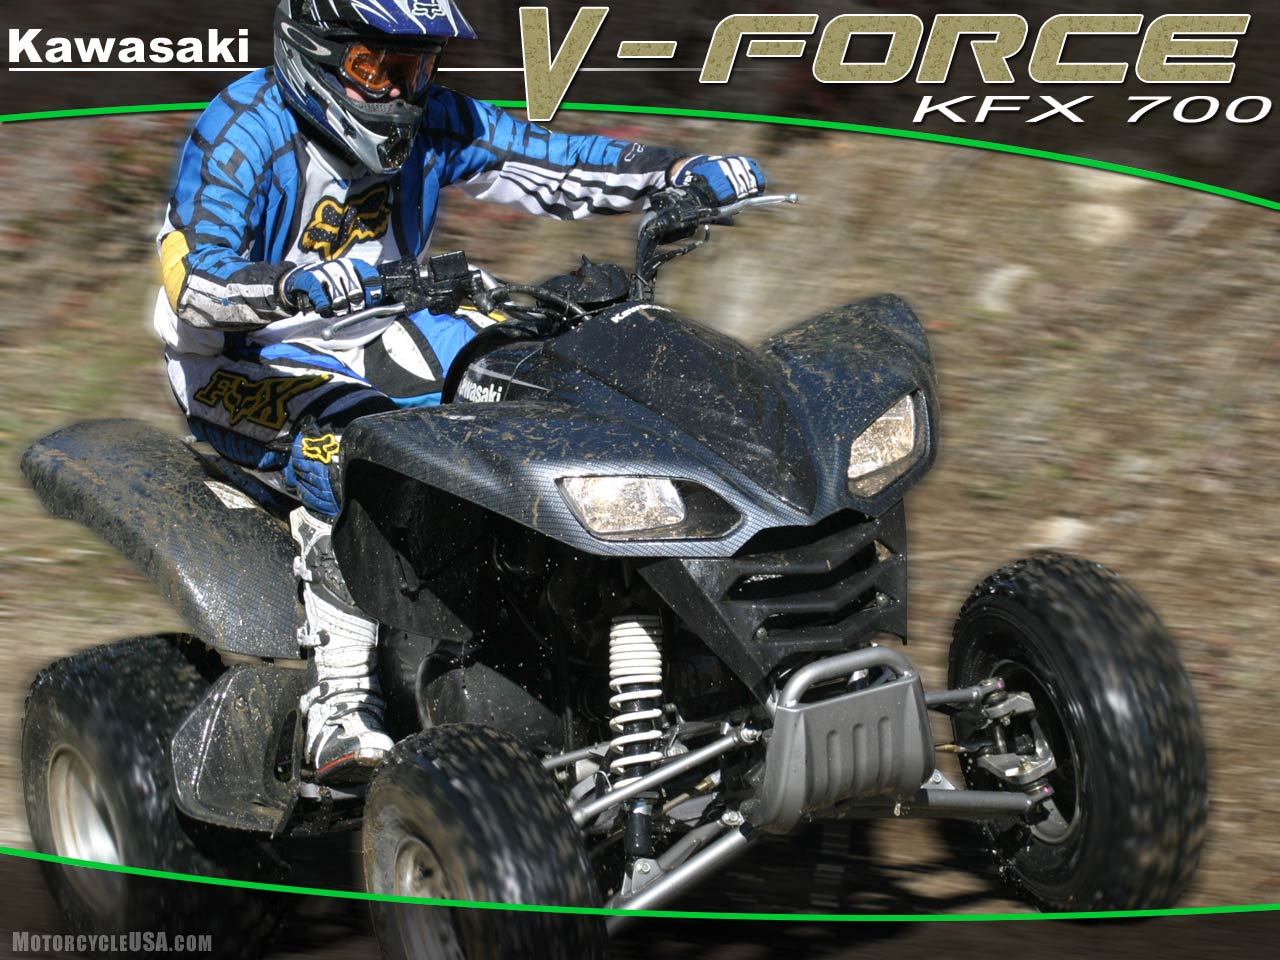 款川崎V Force 700摩托车图片1